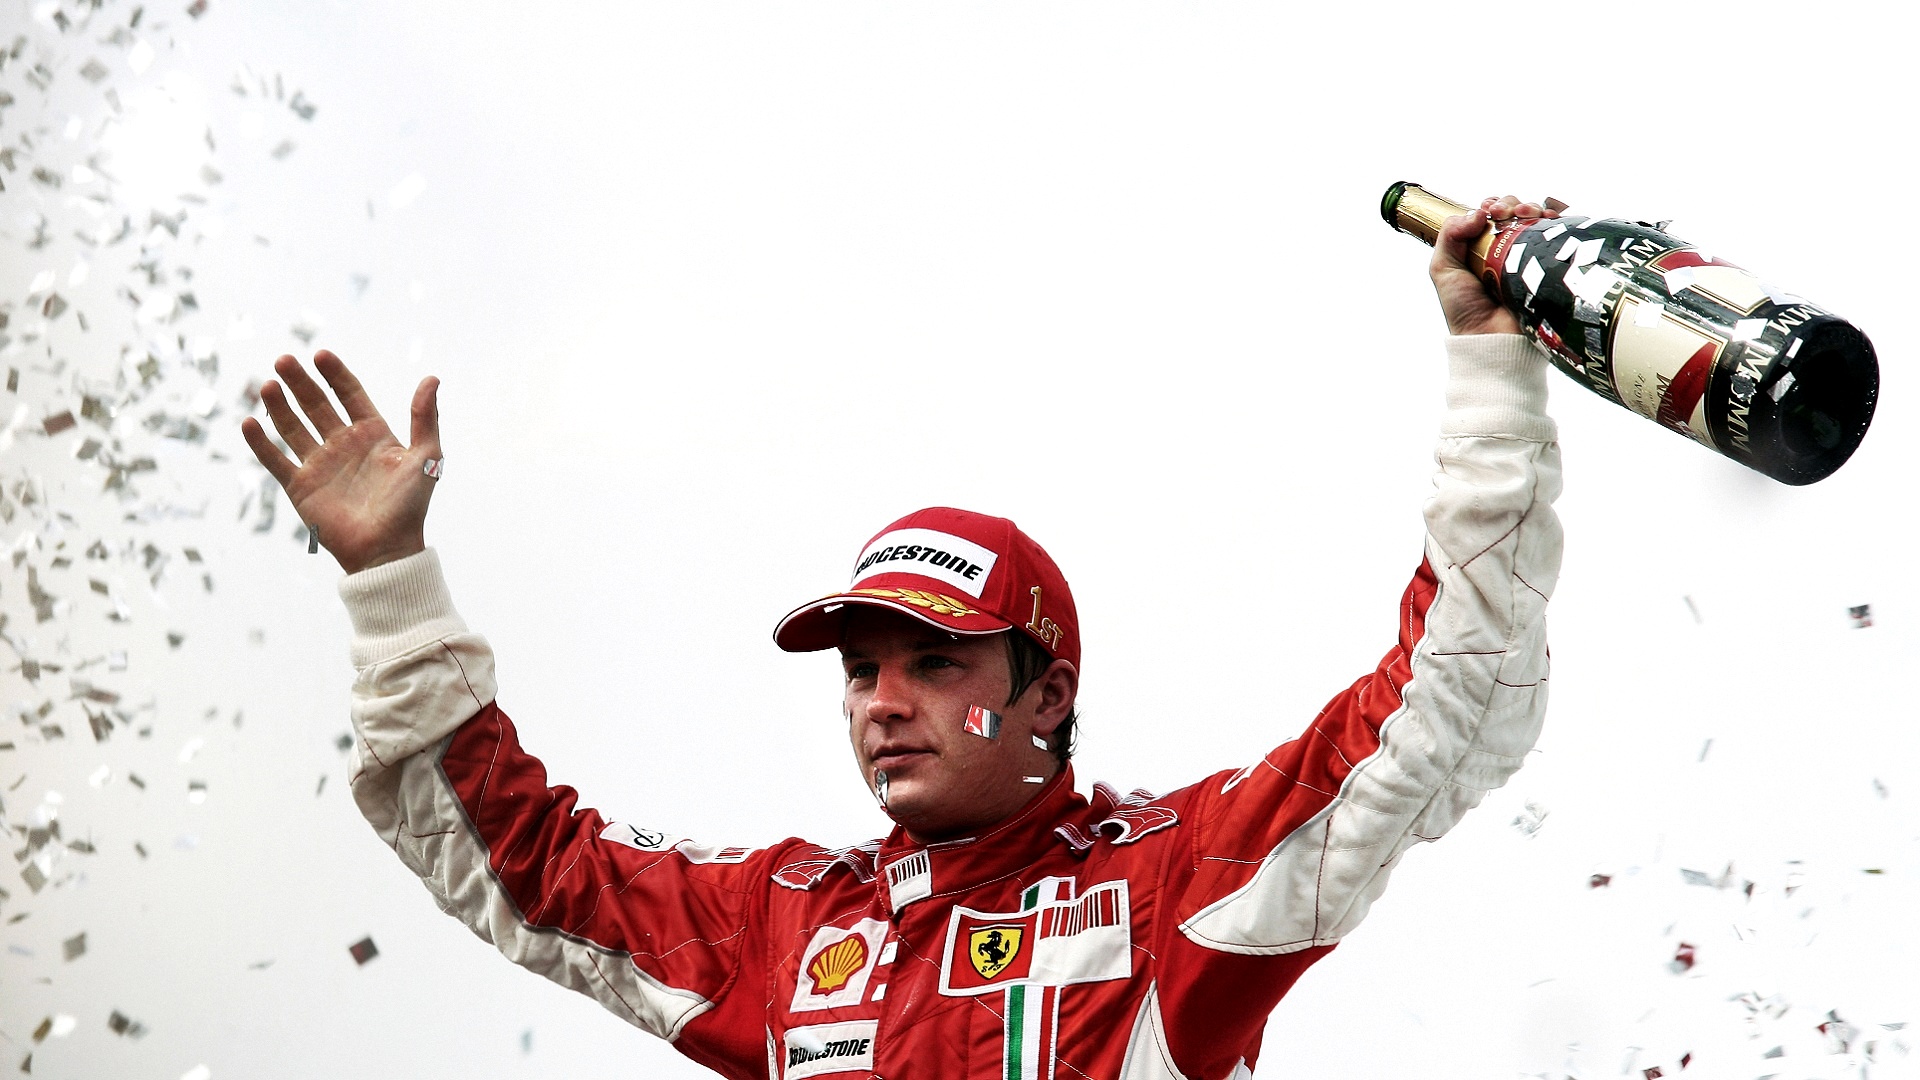 Kimi Raikkonen se retira de la F1: el hombre de hielo, campeón en 2007 con Ferrari, dice adiós | DAZN News ES